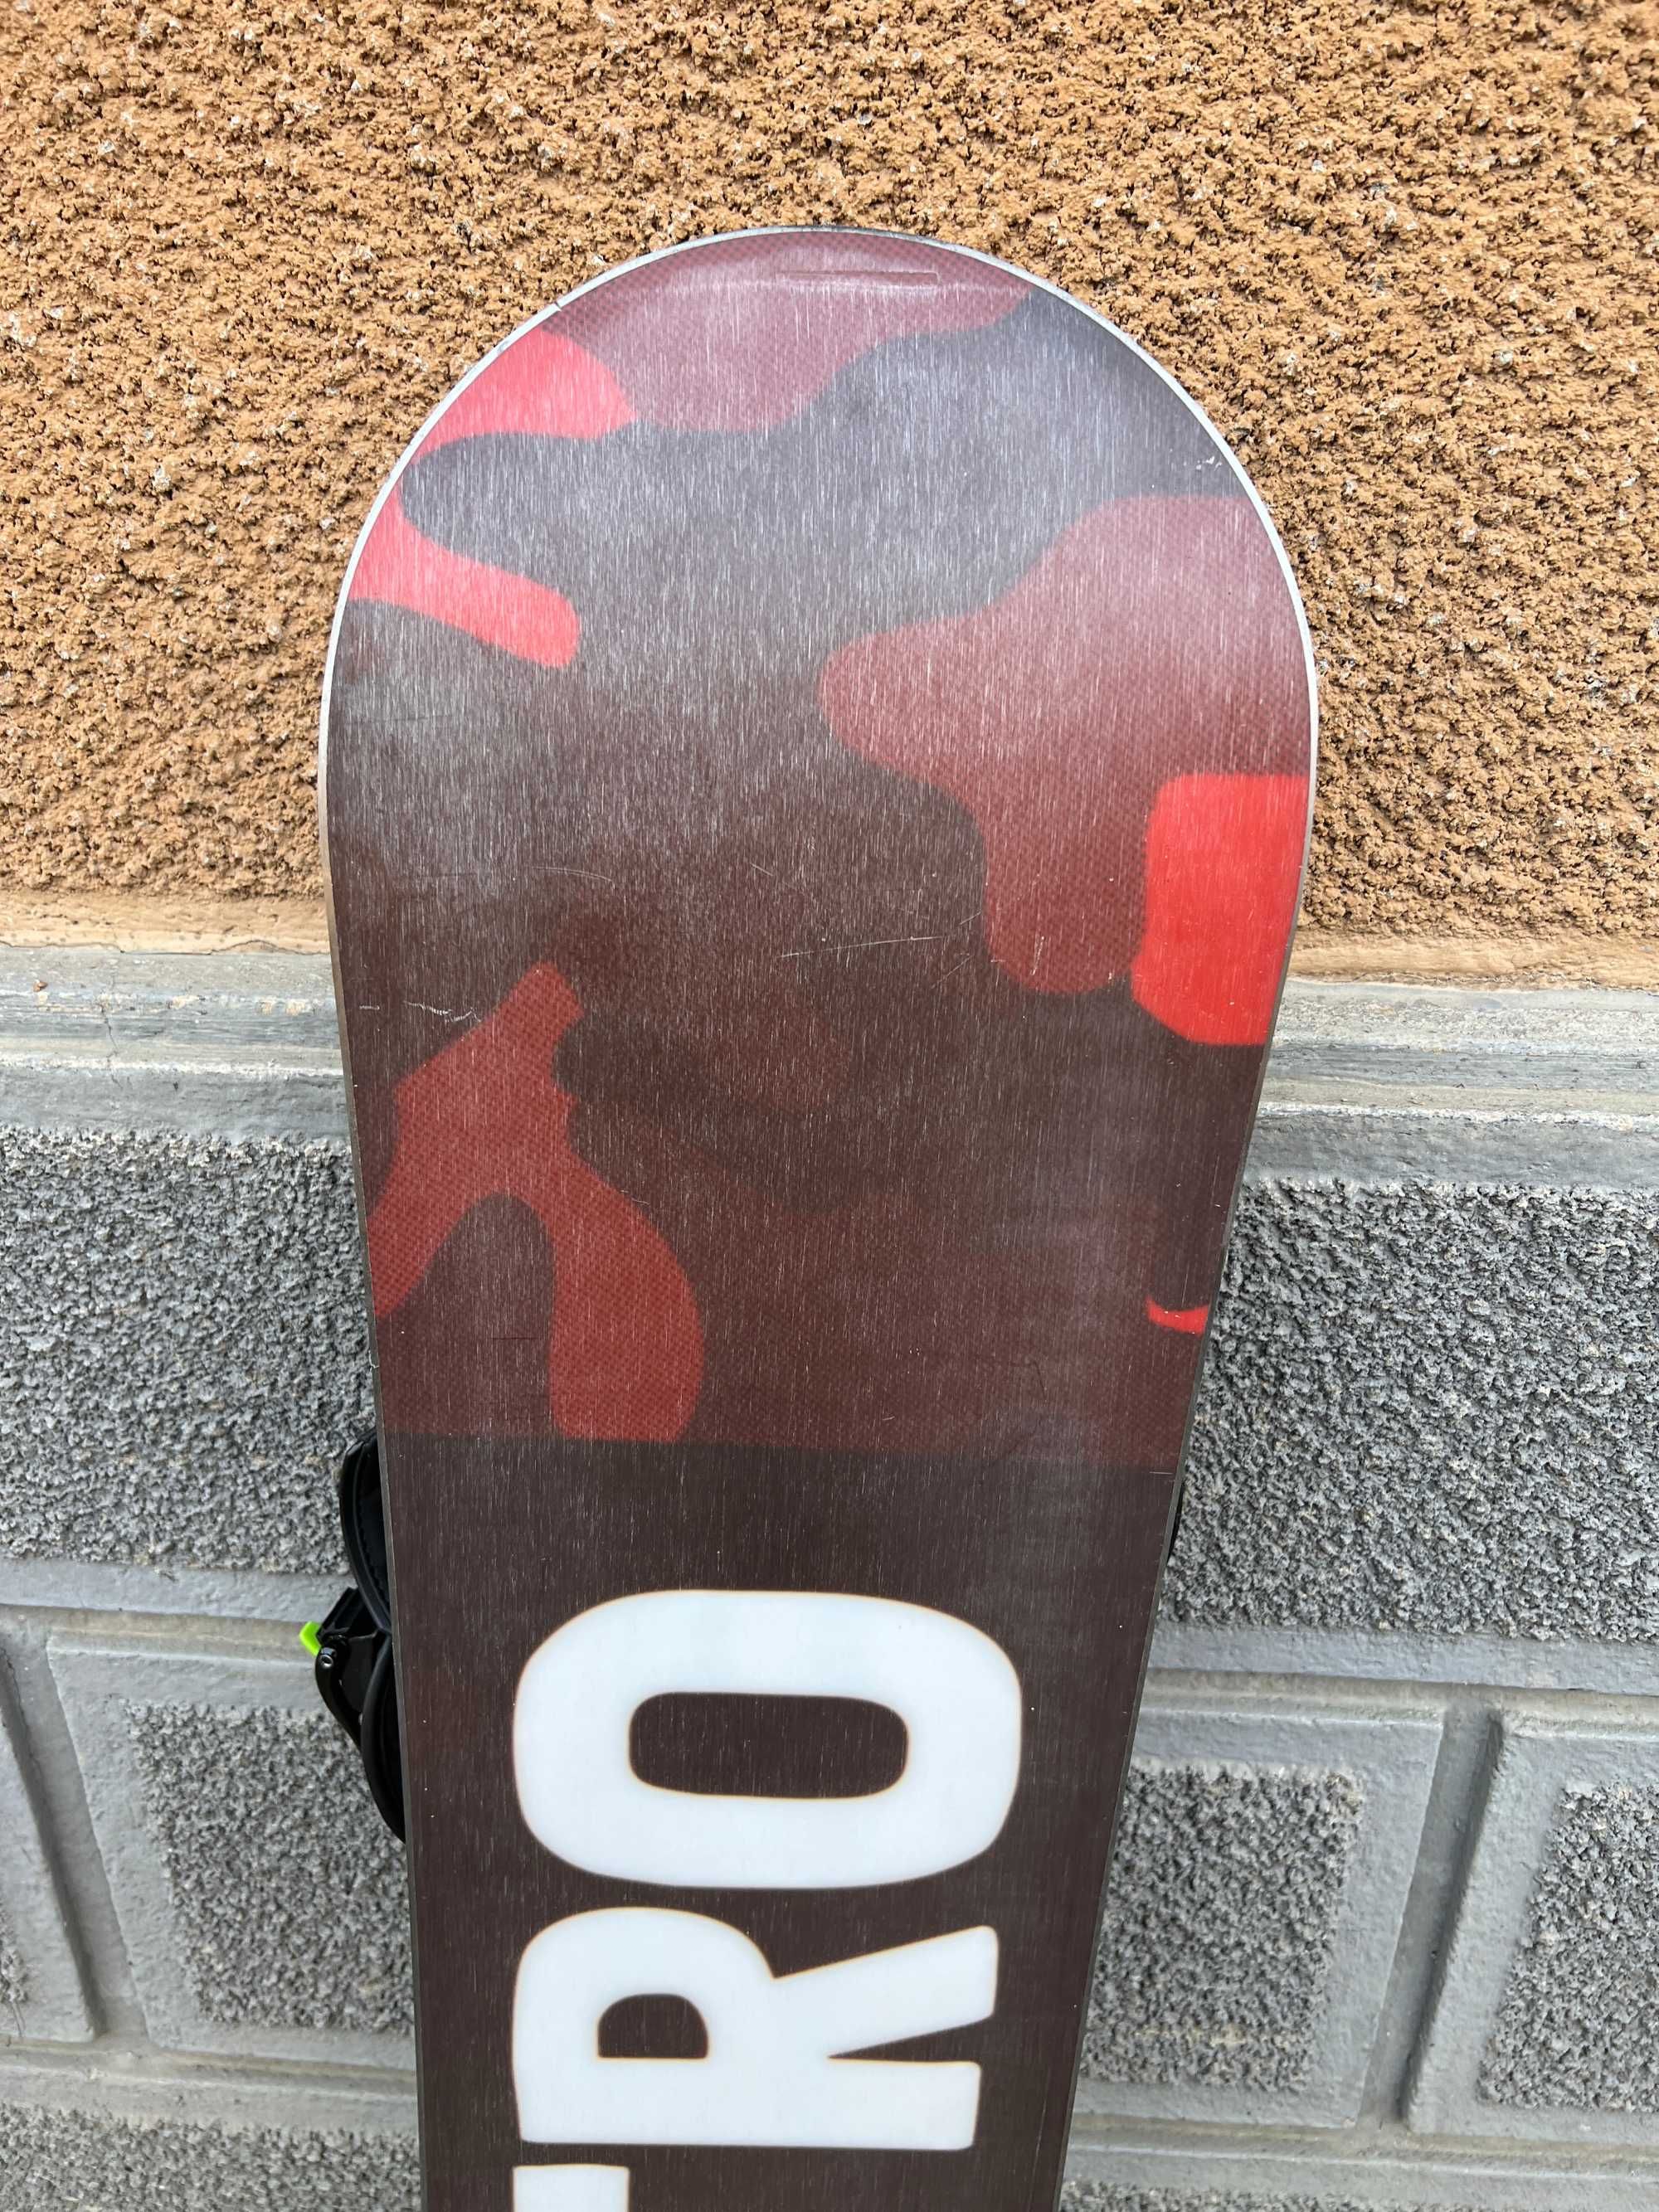 placa snowboard nitro ripper L121